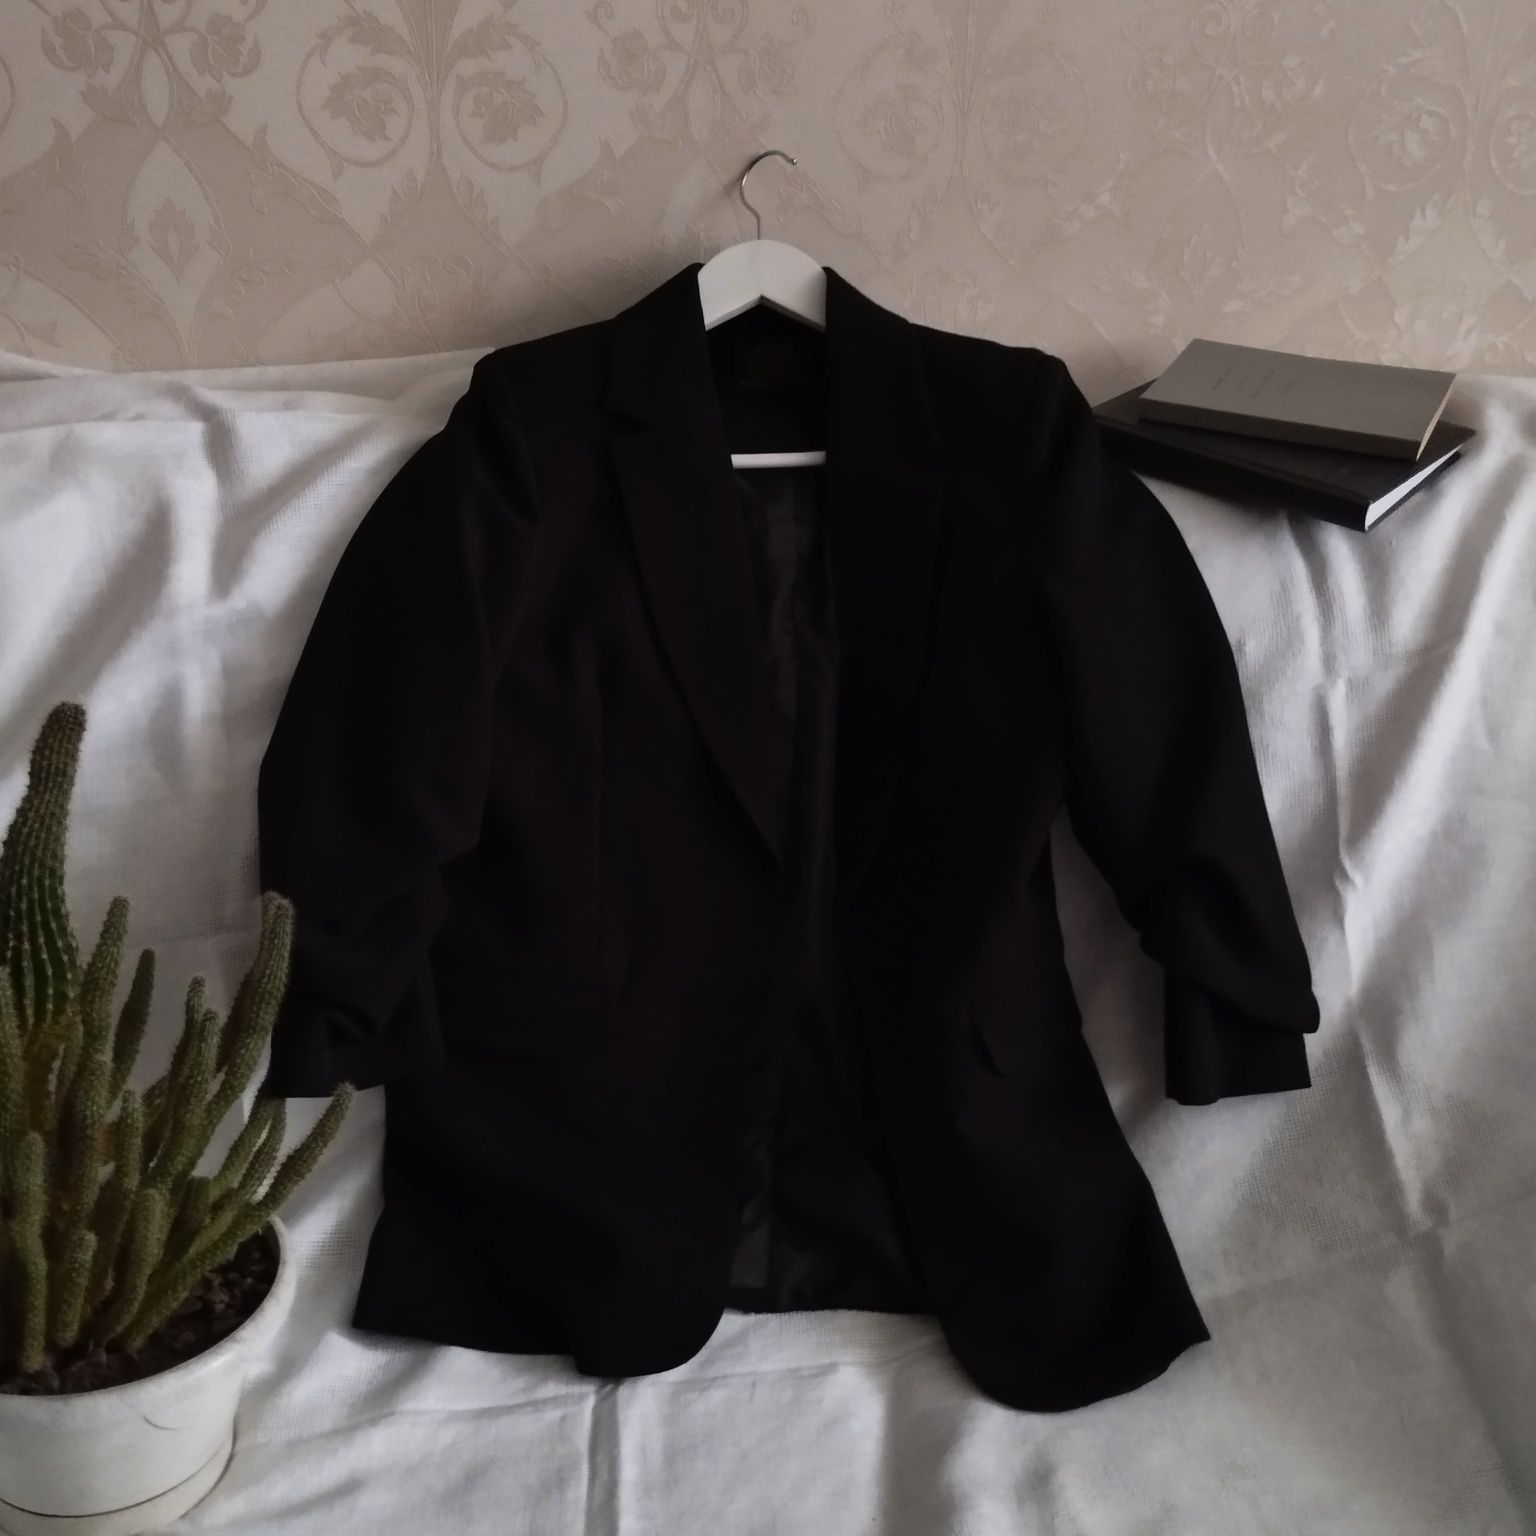 Базовий чорний піджак